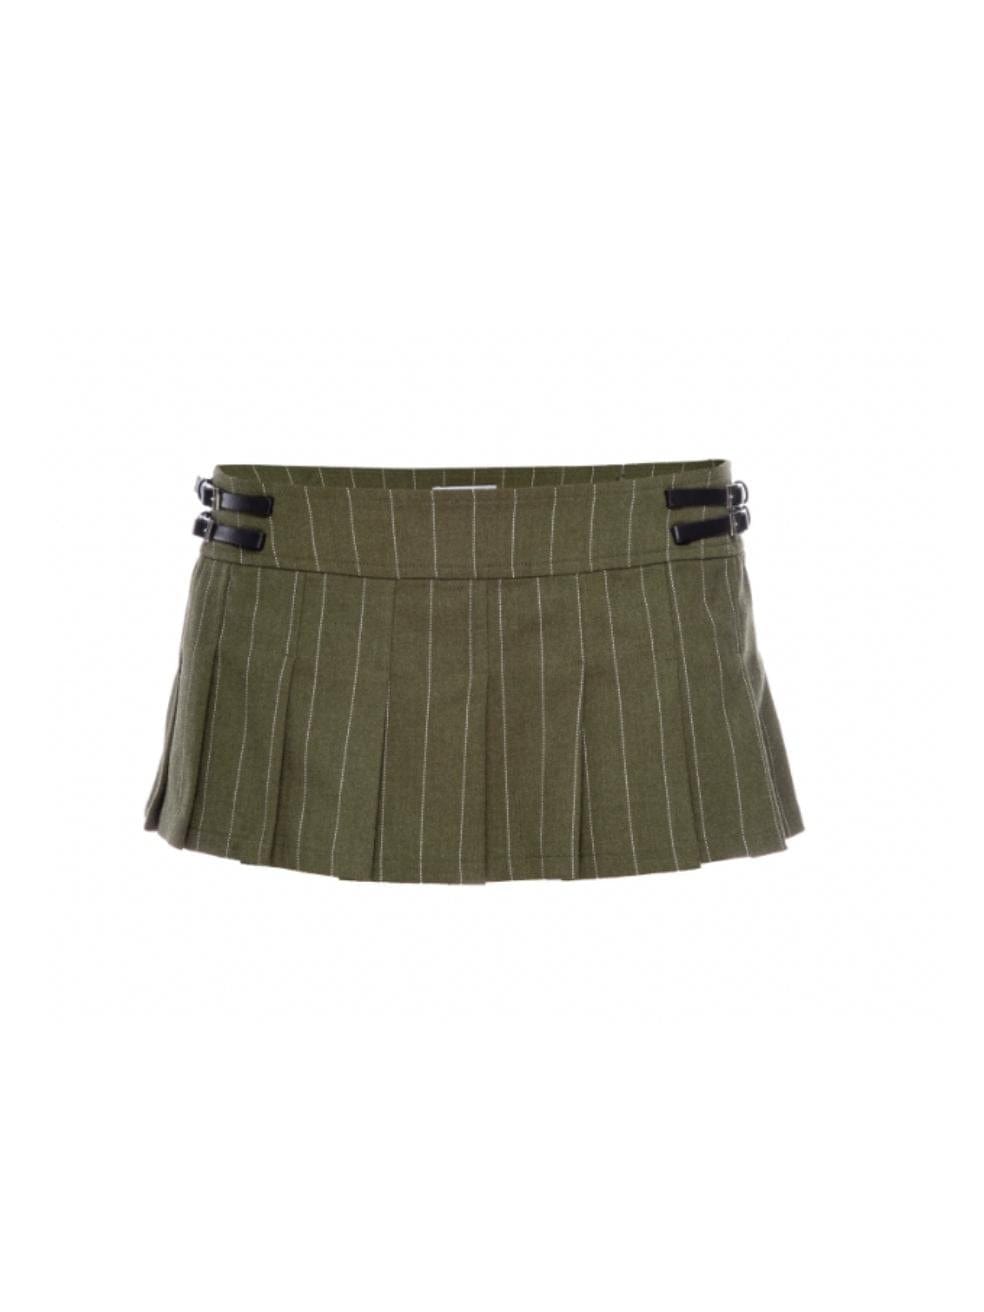 Miaou Reno Micro Mini Skirt in Olive Green